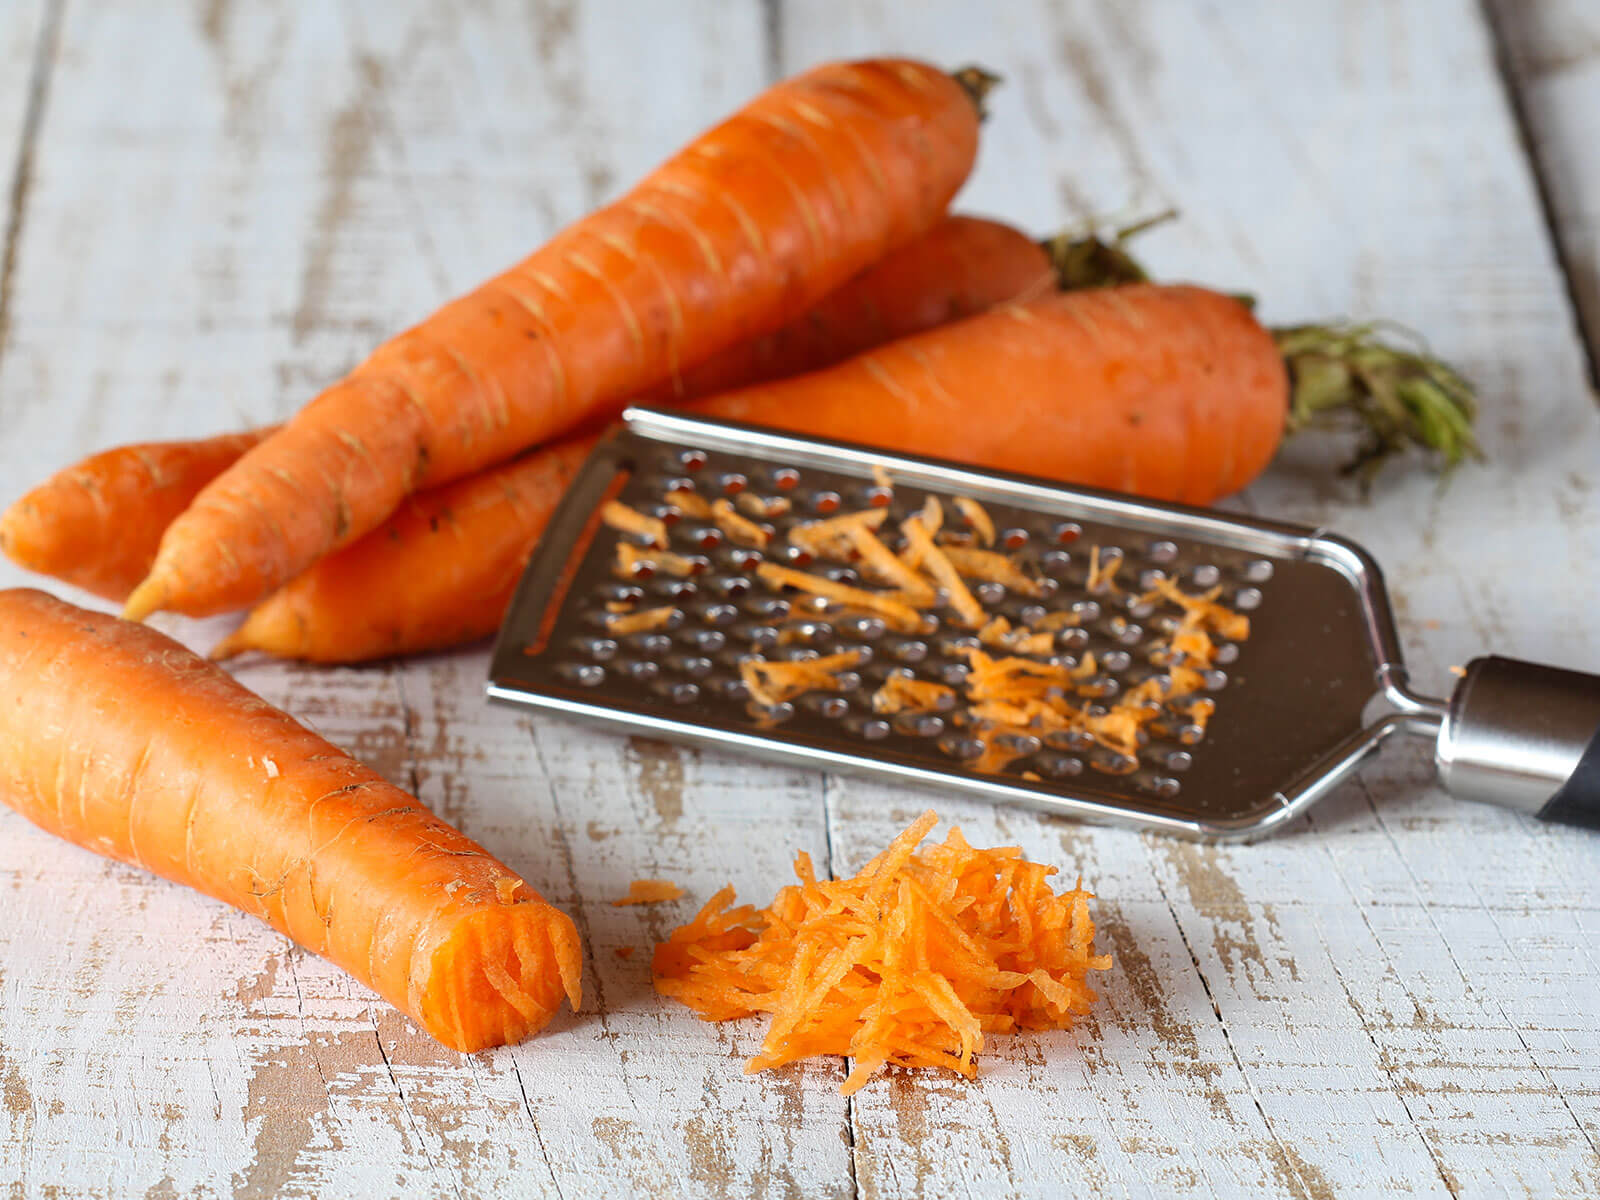 Vier rohe Karotten liegen bereit um einer Handreibe für ein Tress-Rezept klein geraspelt zu werden